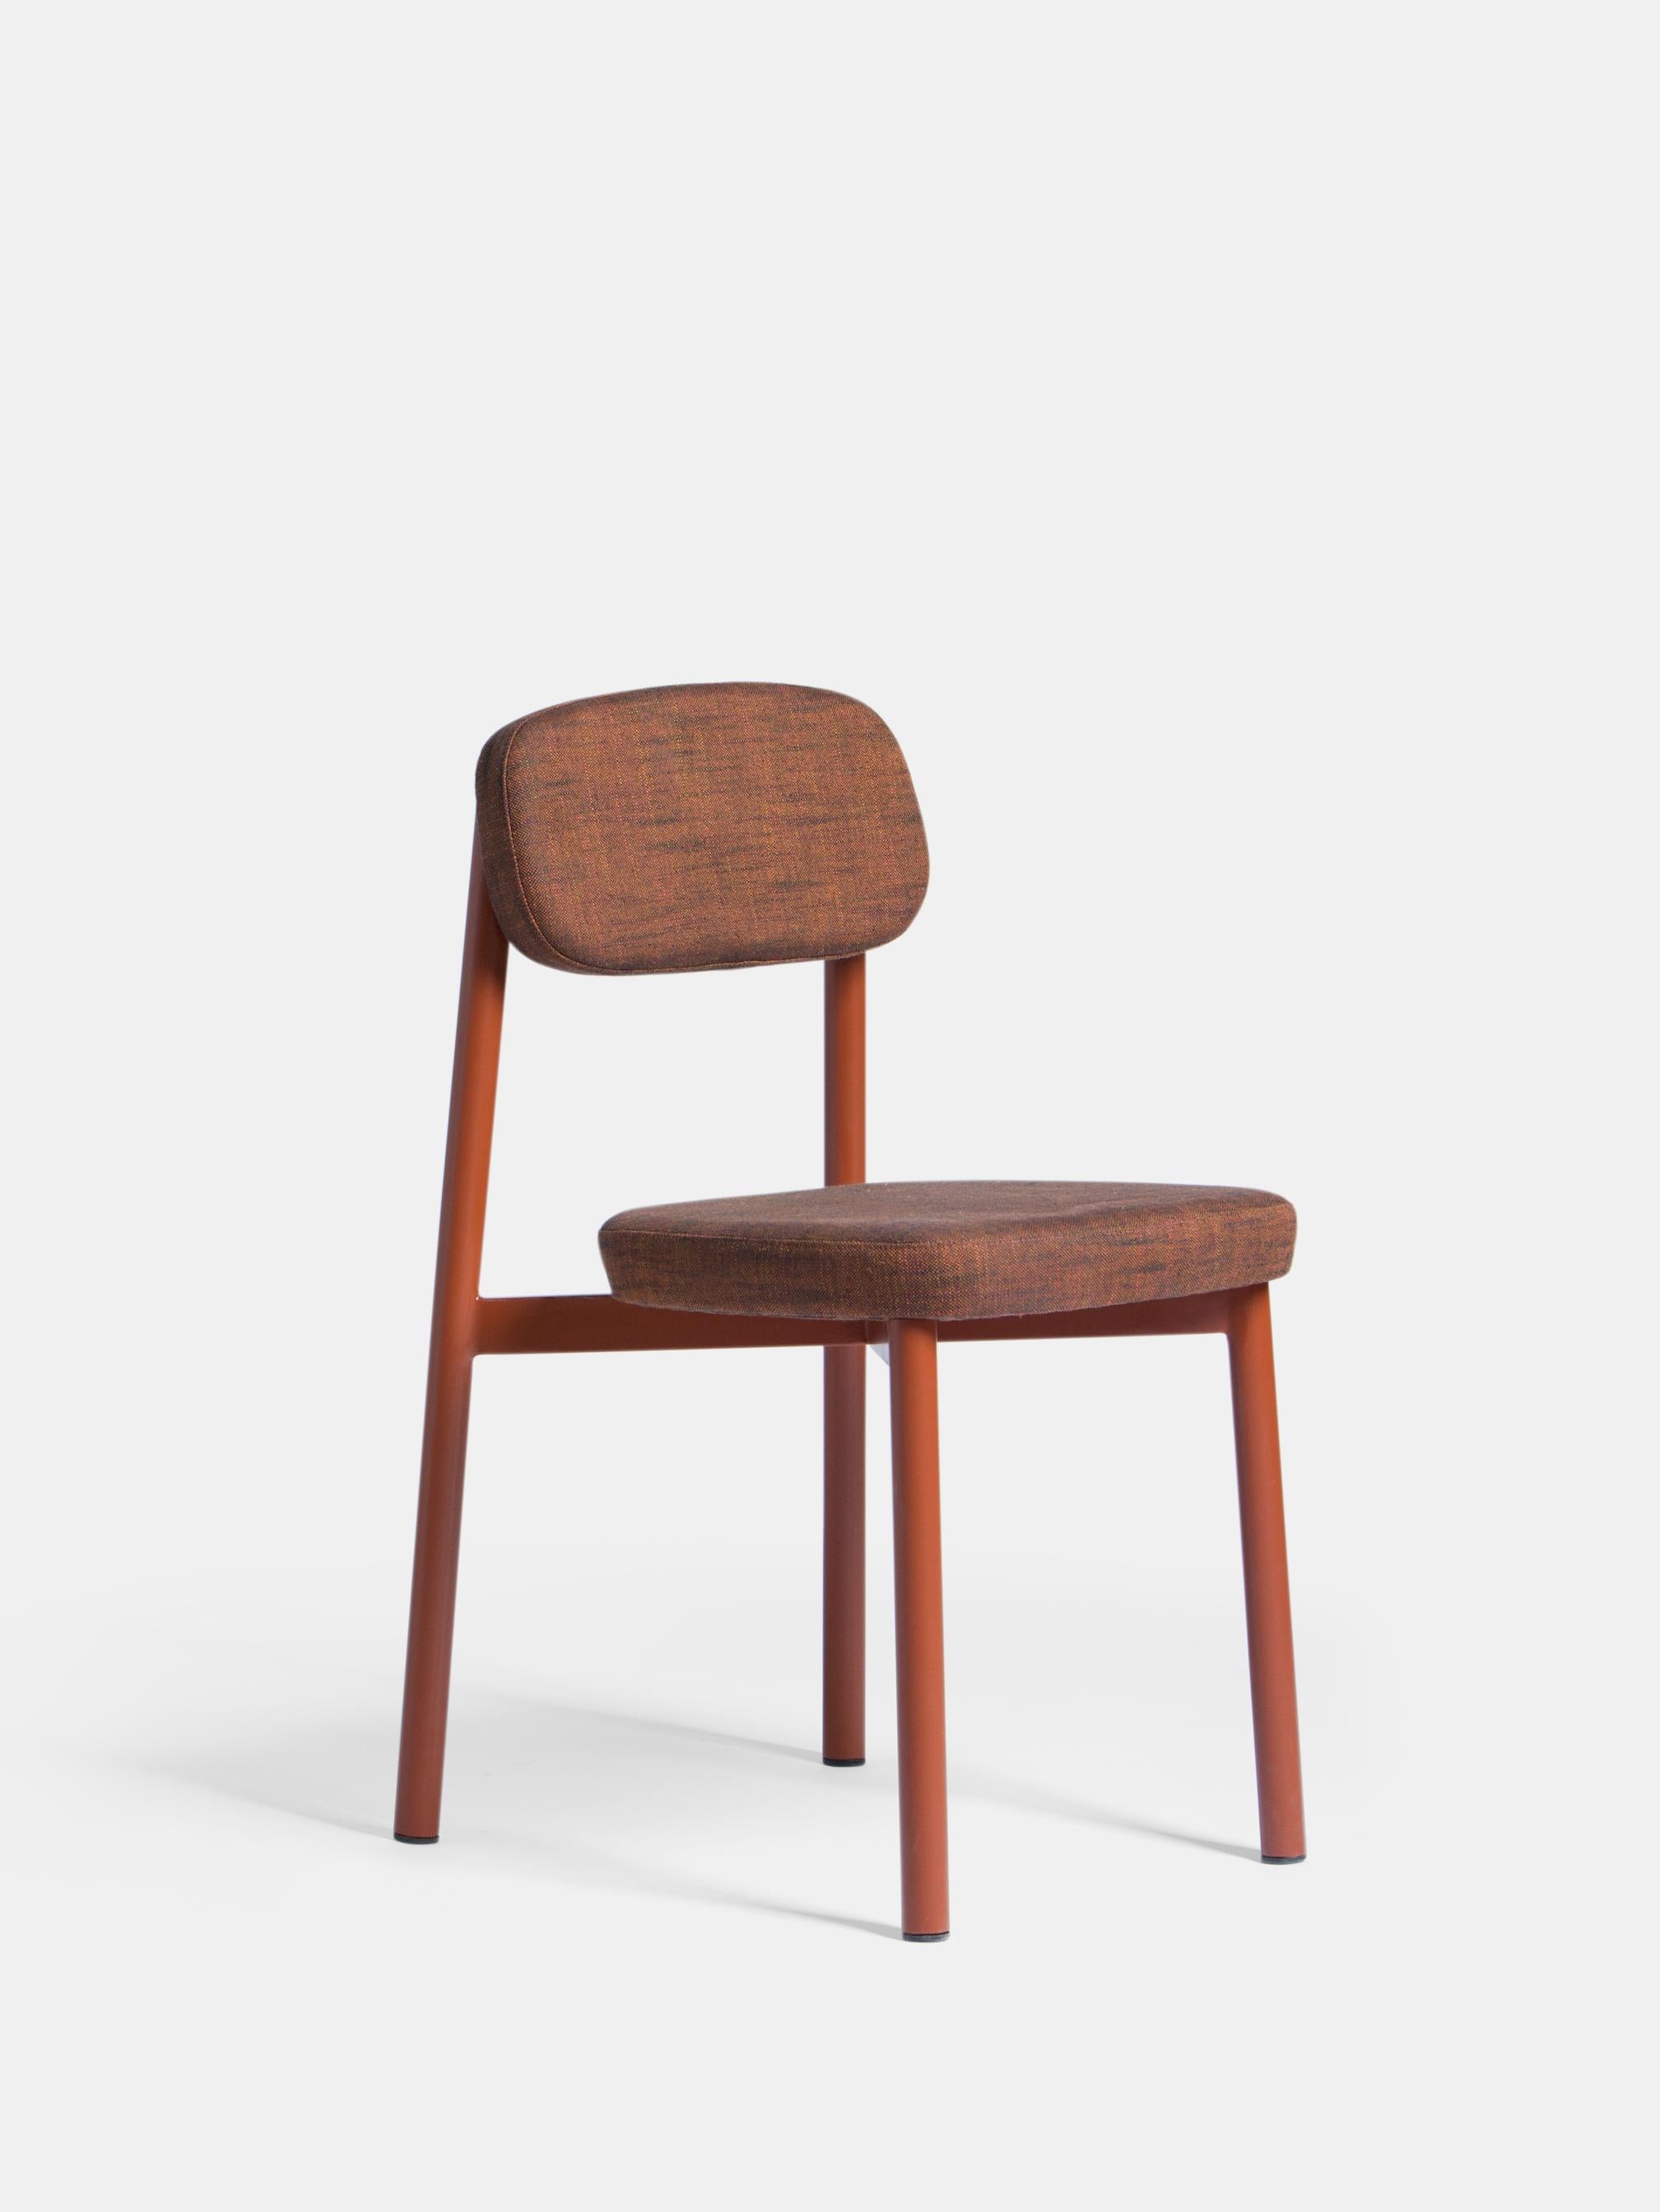 Ensemble de 6 chaises de résidence rouge brique par Kann Design
Dimensions : D 43 x L 50 x H 77 cm.
MATERIAL : Tube d'acier, mousse HR, tissu d'ameublement Sahco Ellis 18 (11 % viscose, 30 % lin).
Disponible dans d'autres couleurs.

Tous les sièges